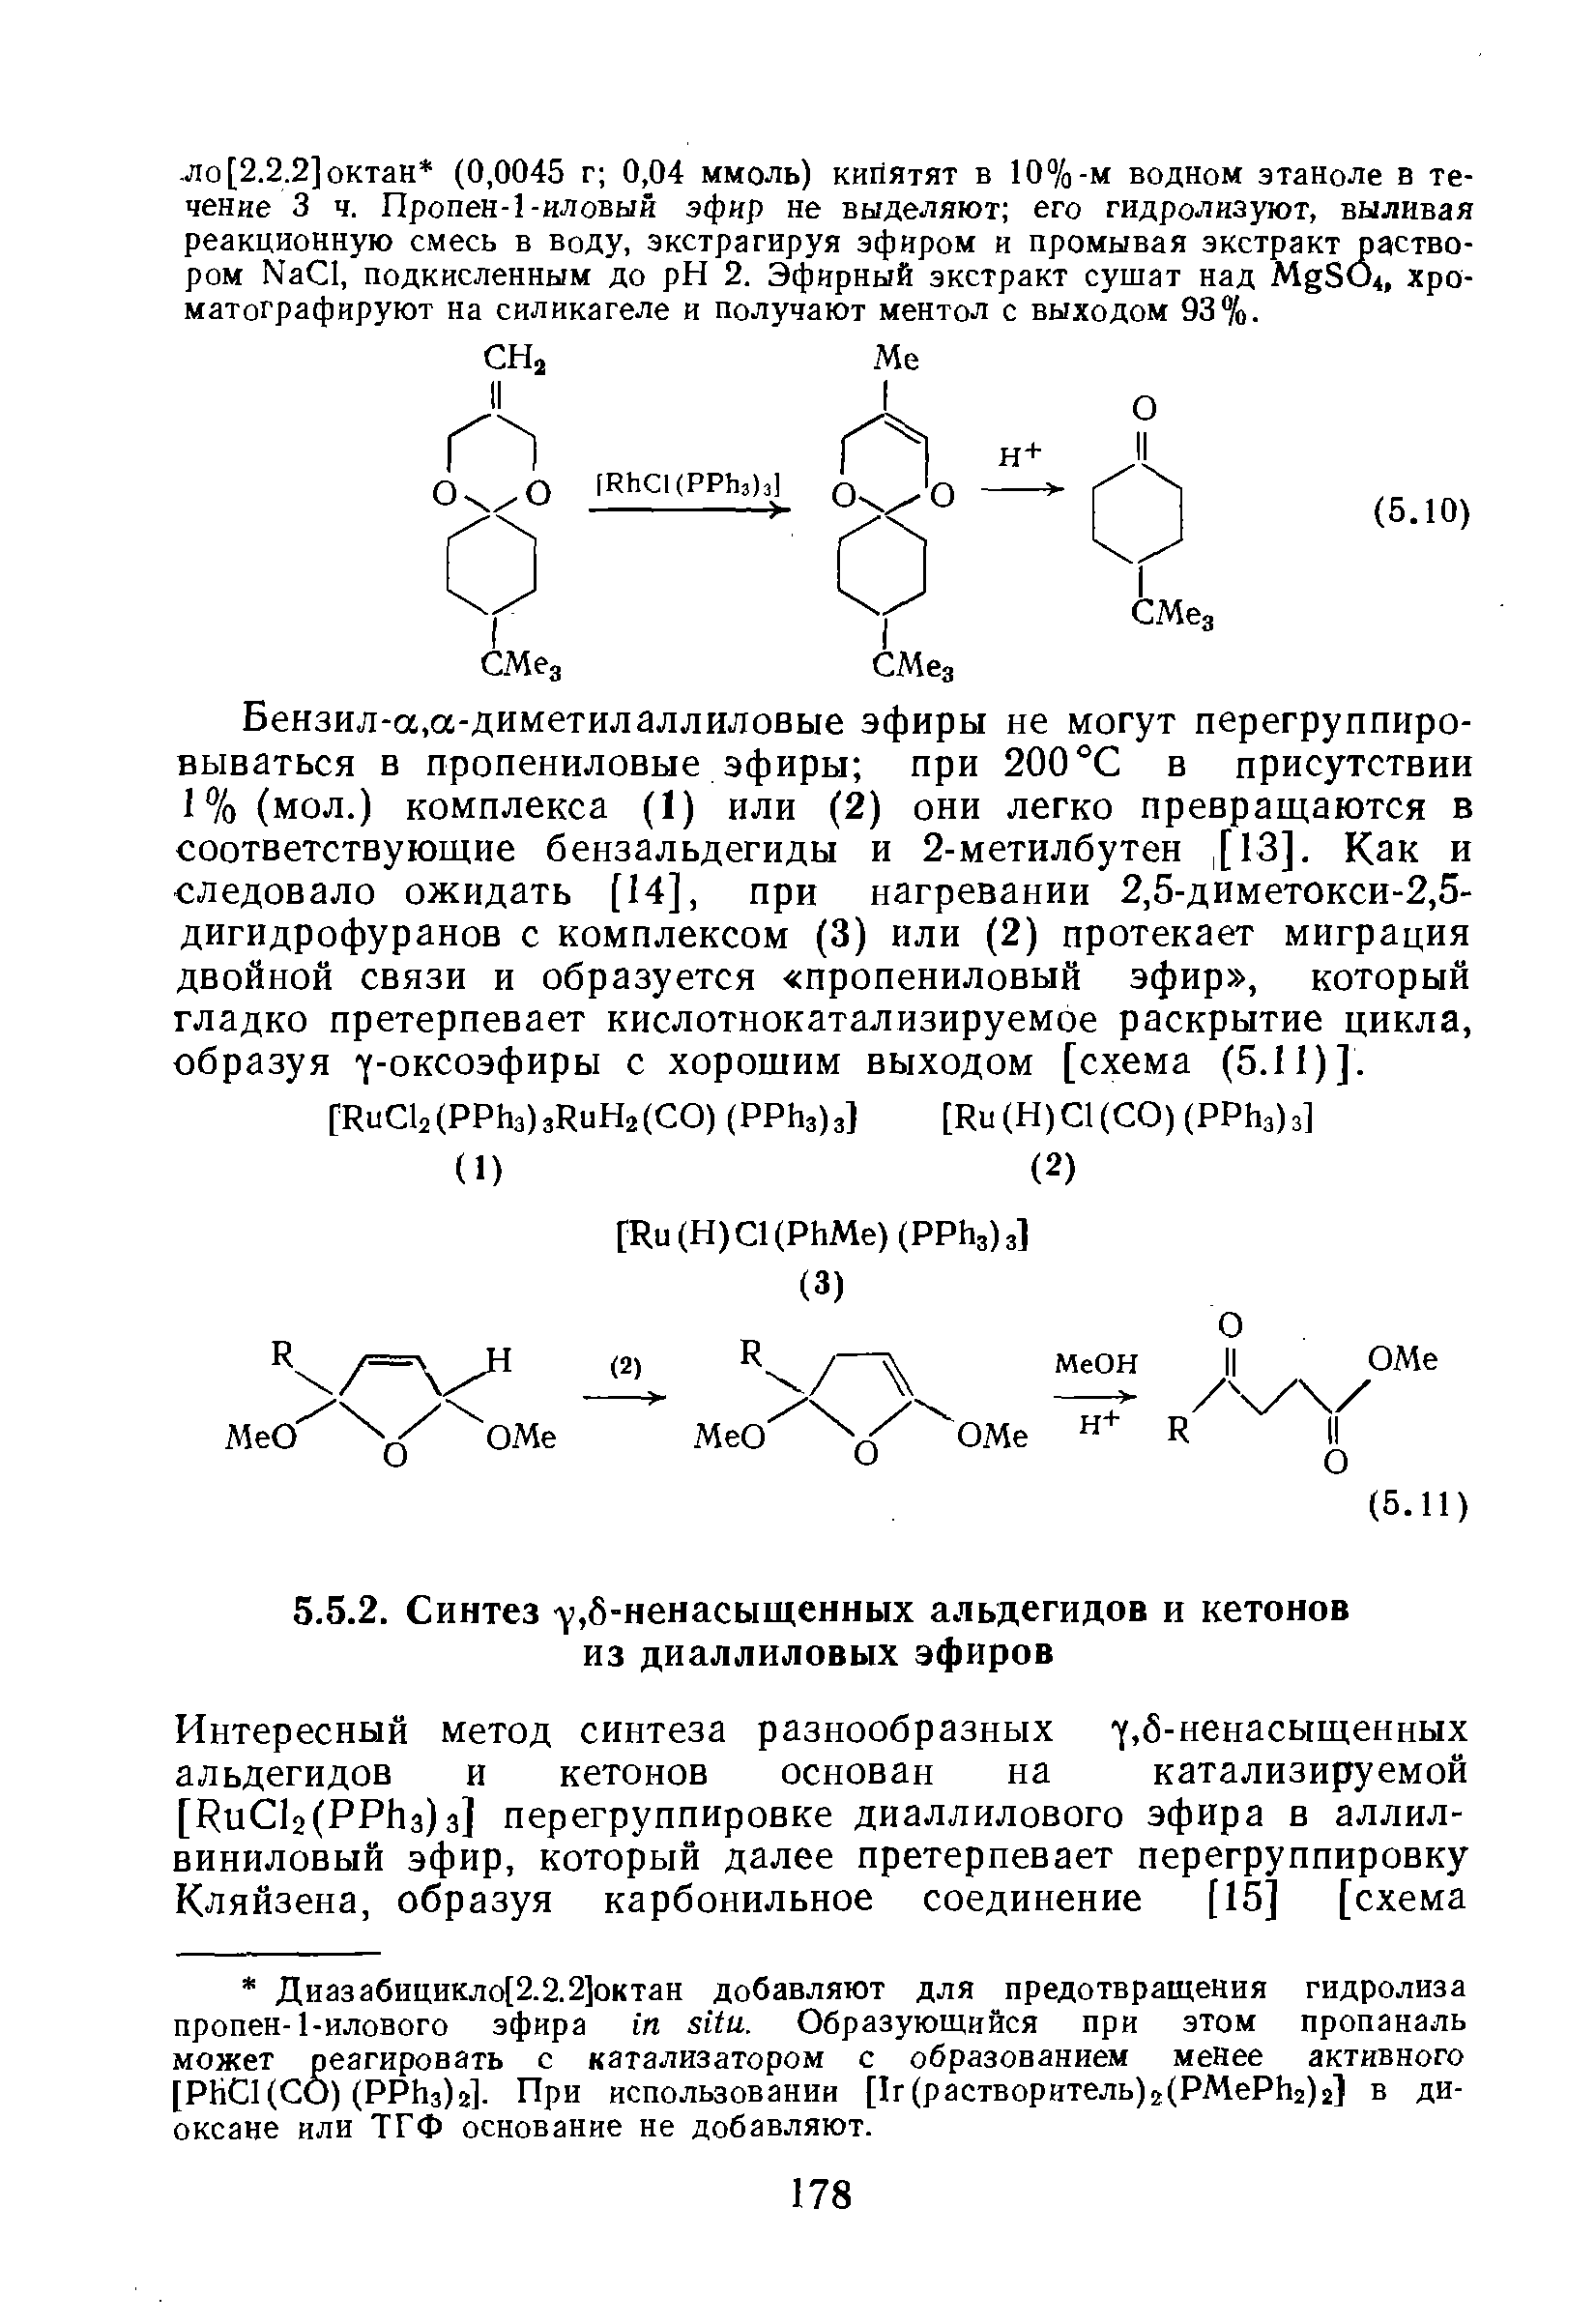 Бензил-а,а-диметилаллиловые эфиры не могут перегруппировываться в пропениловые эфиры при 200°С в присутствии 1%(мол.) комплекса (1) или (2) они легко превращаются в соответствующие бензальдегиды и 2-метилбутен, [13]. Как и следовало ожидать [14], при нагревании 2,5-диметокси-2,5-дигидрофуранов с комплексом (3) или (2) протекает миграция двойной связи и образуется пропениловый эфир , который гладко претерпевает кислотнокатализируемое раскрытие цикла, образуя /-оксоэфиры с хорошим выходом [схема (5.11)].